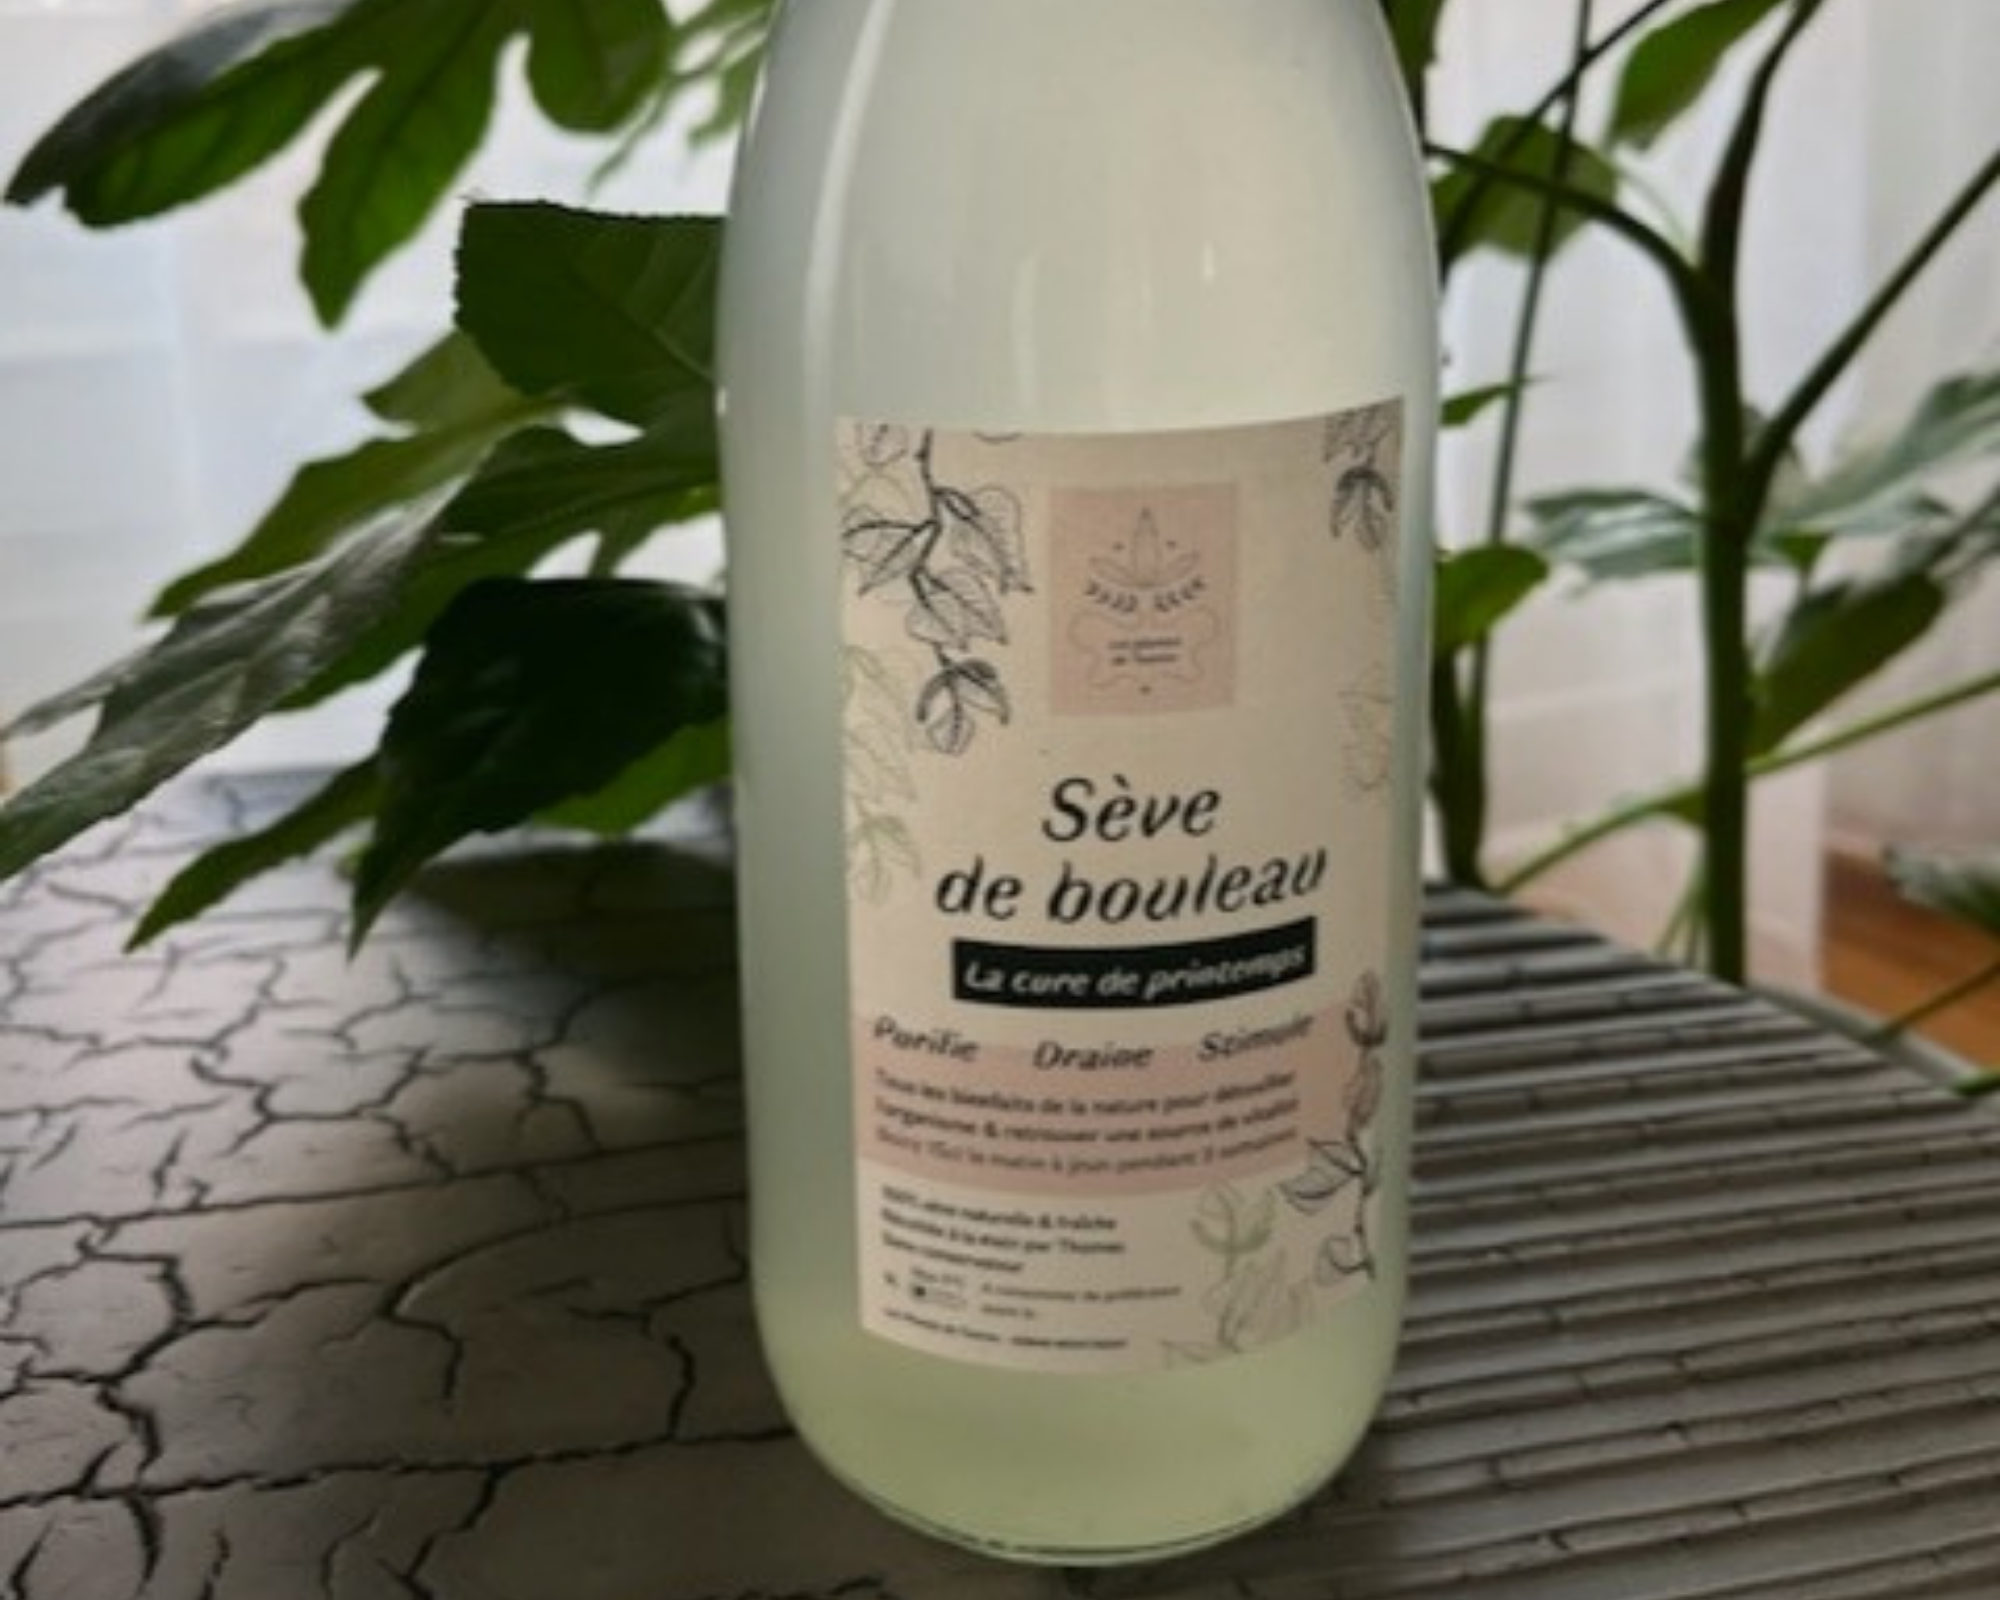 seve-bouleau-huile-essentielle-cbd-roanne-boutique-produits-sante-nature-42-lyon-st-etienne